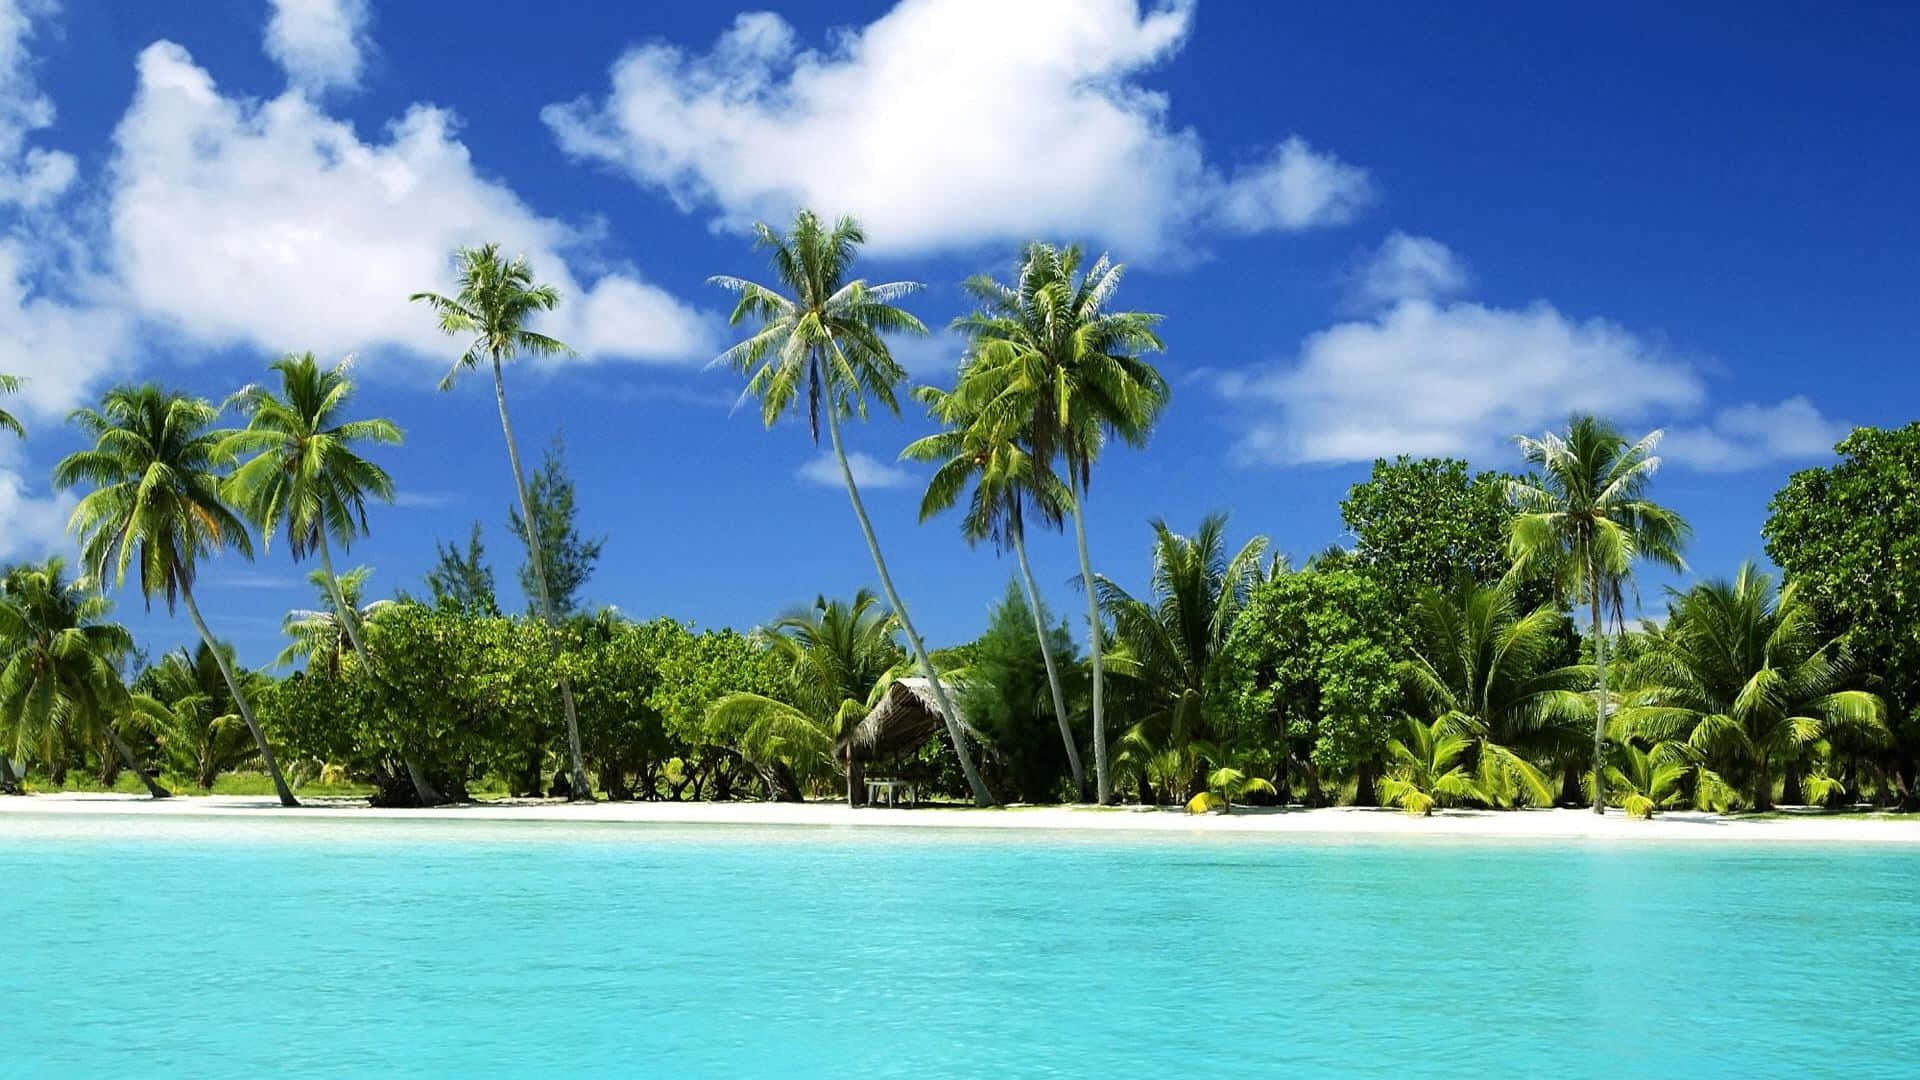 Nyd et øjeblik af lykke med en ferie til et sødt tropisk paradis. Wallpaper